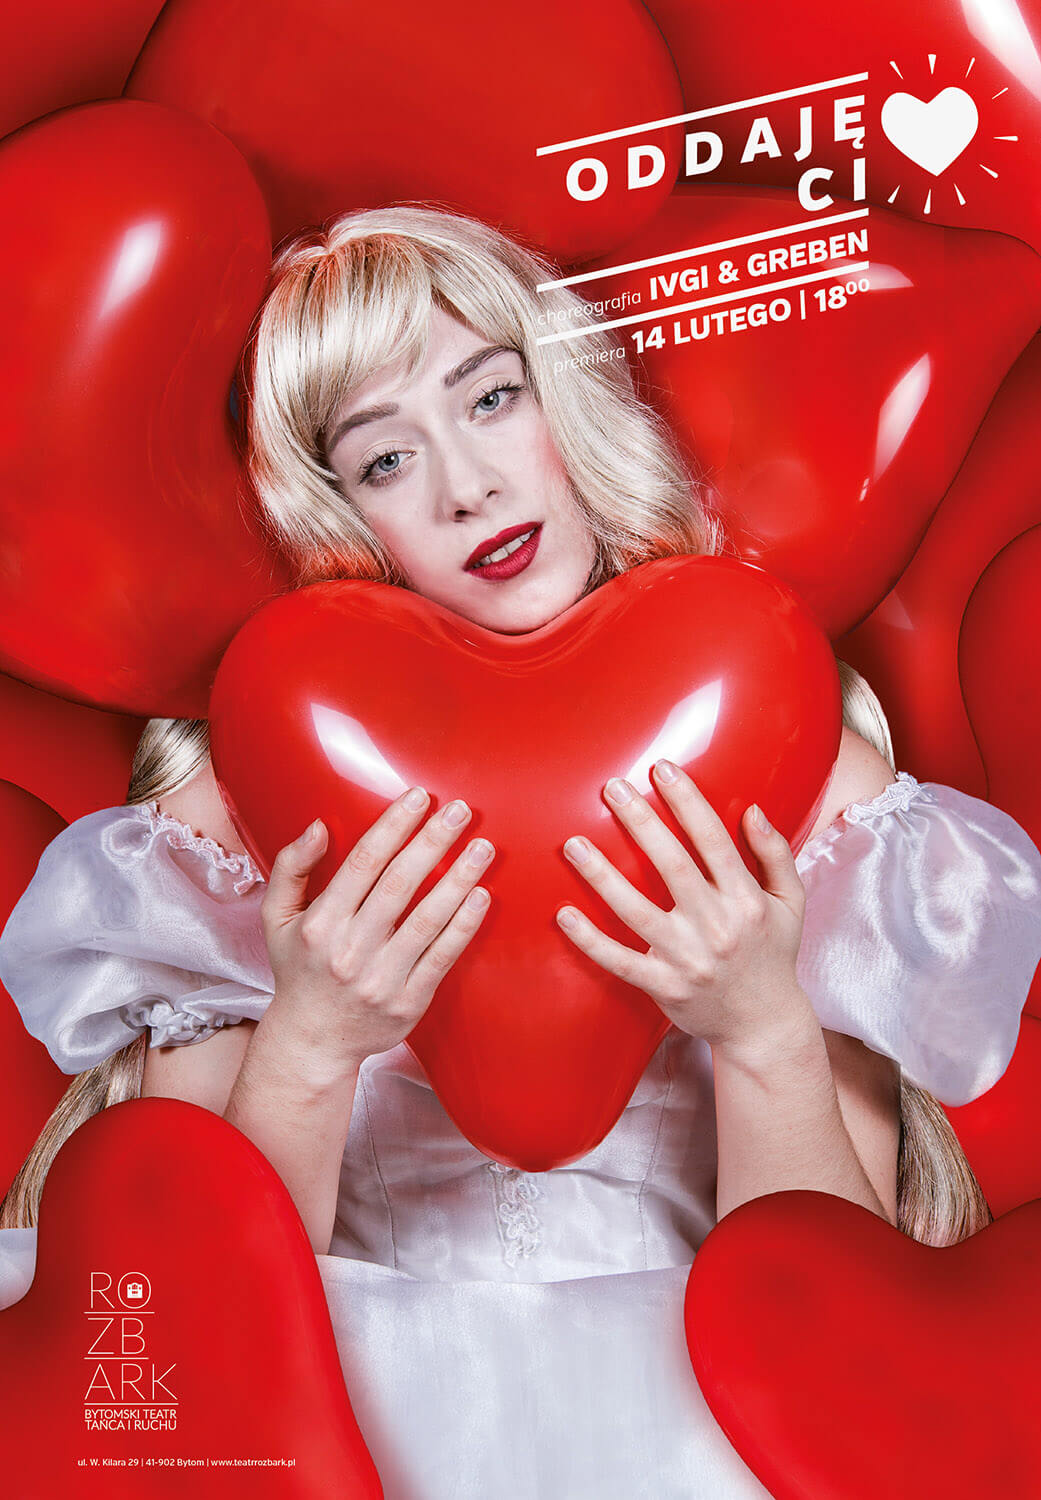 Plakat ze spektaklu Oddaję Ci serce. Na plakacie znajduje się kobieta ubrana w białą bufiastą sukienkę. Kobieta jest otoczona z każdej strony czerwonymi balonami w kształcie serc. W prawym górnym rogu umieszczony jest biały napis Oddaję ci – rysunek serduszka- a poniżej choreografia: Ivgi&Greben,premiera 14 lutego 2015